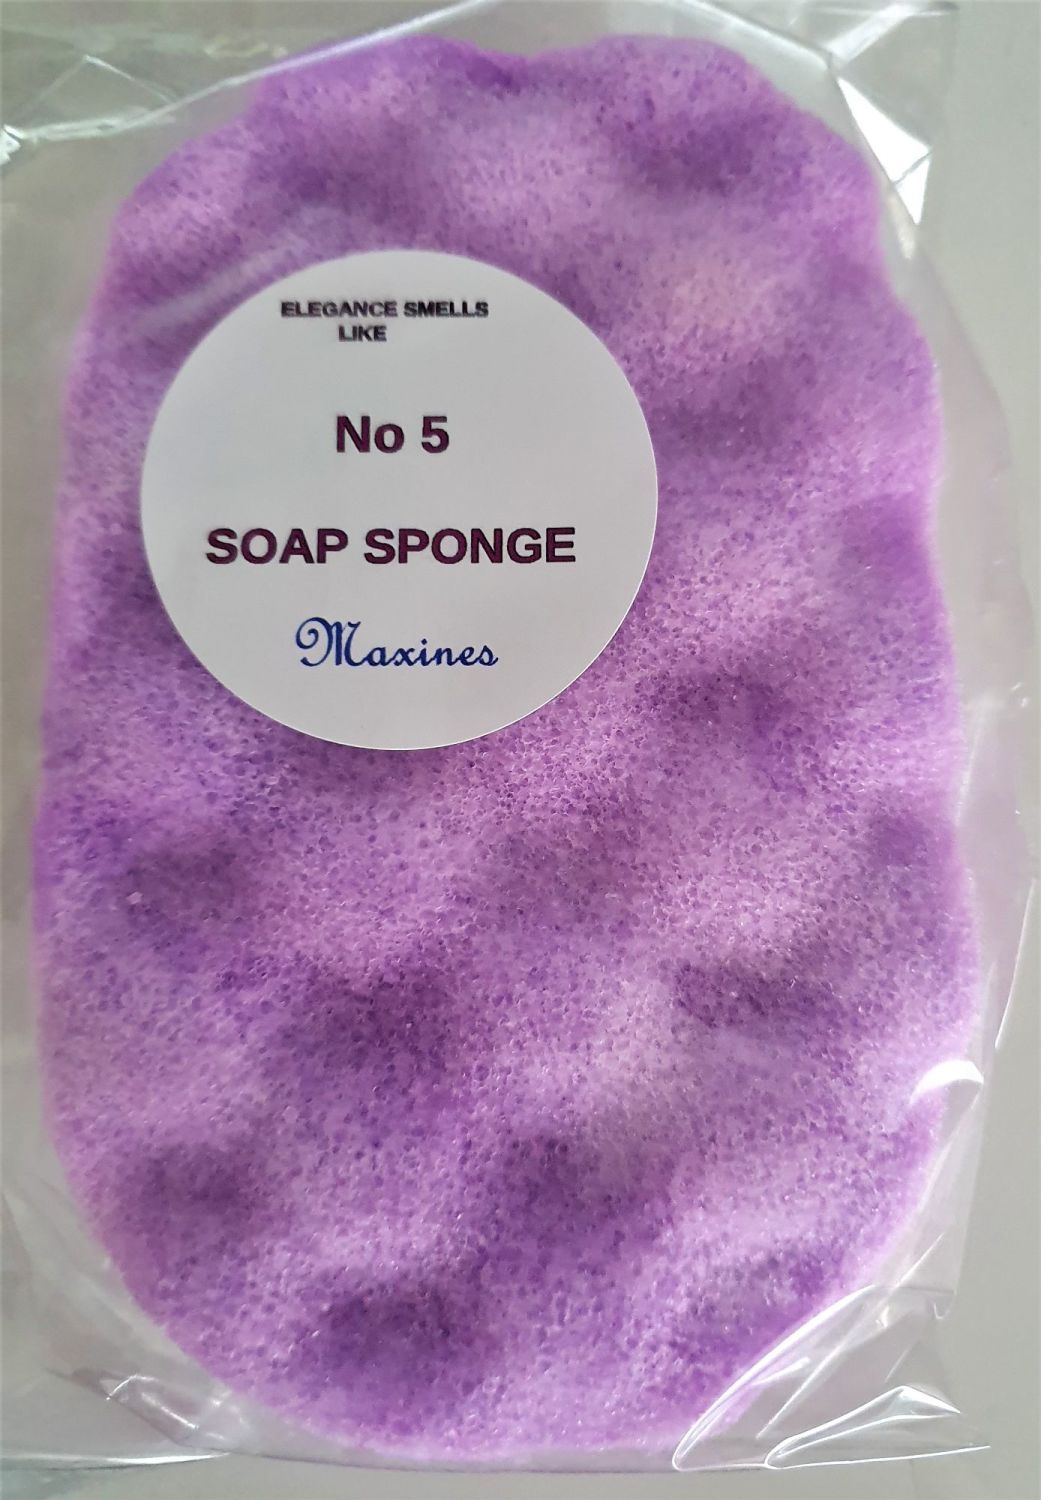 NUMBER 5 SOAP SPONGE